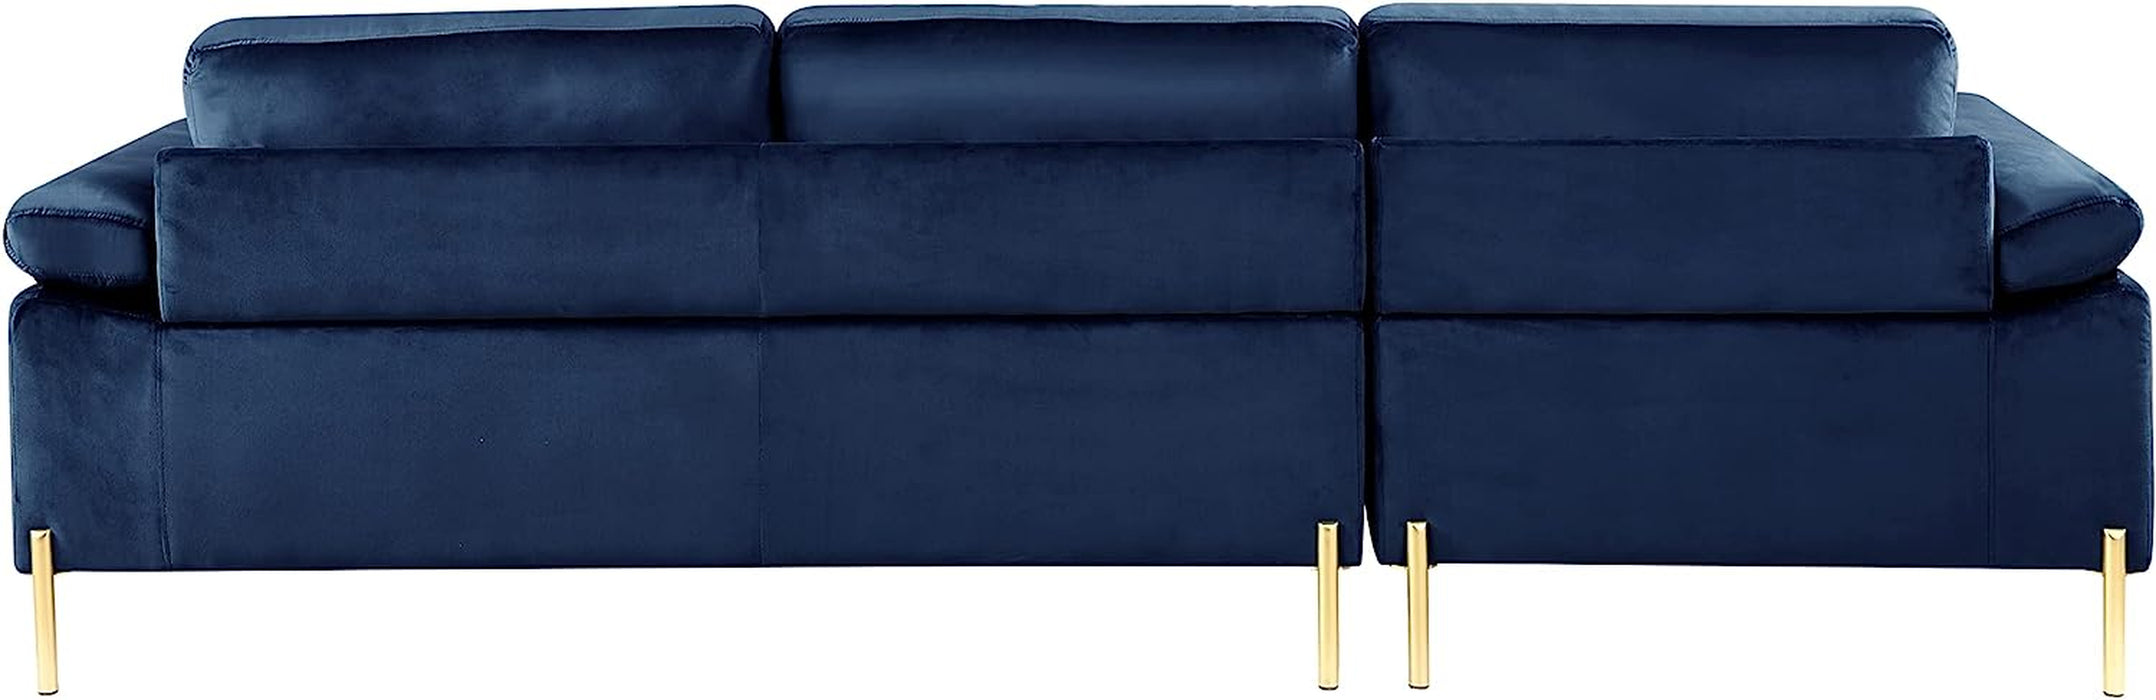 Blue Nando Sectional Sofa